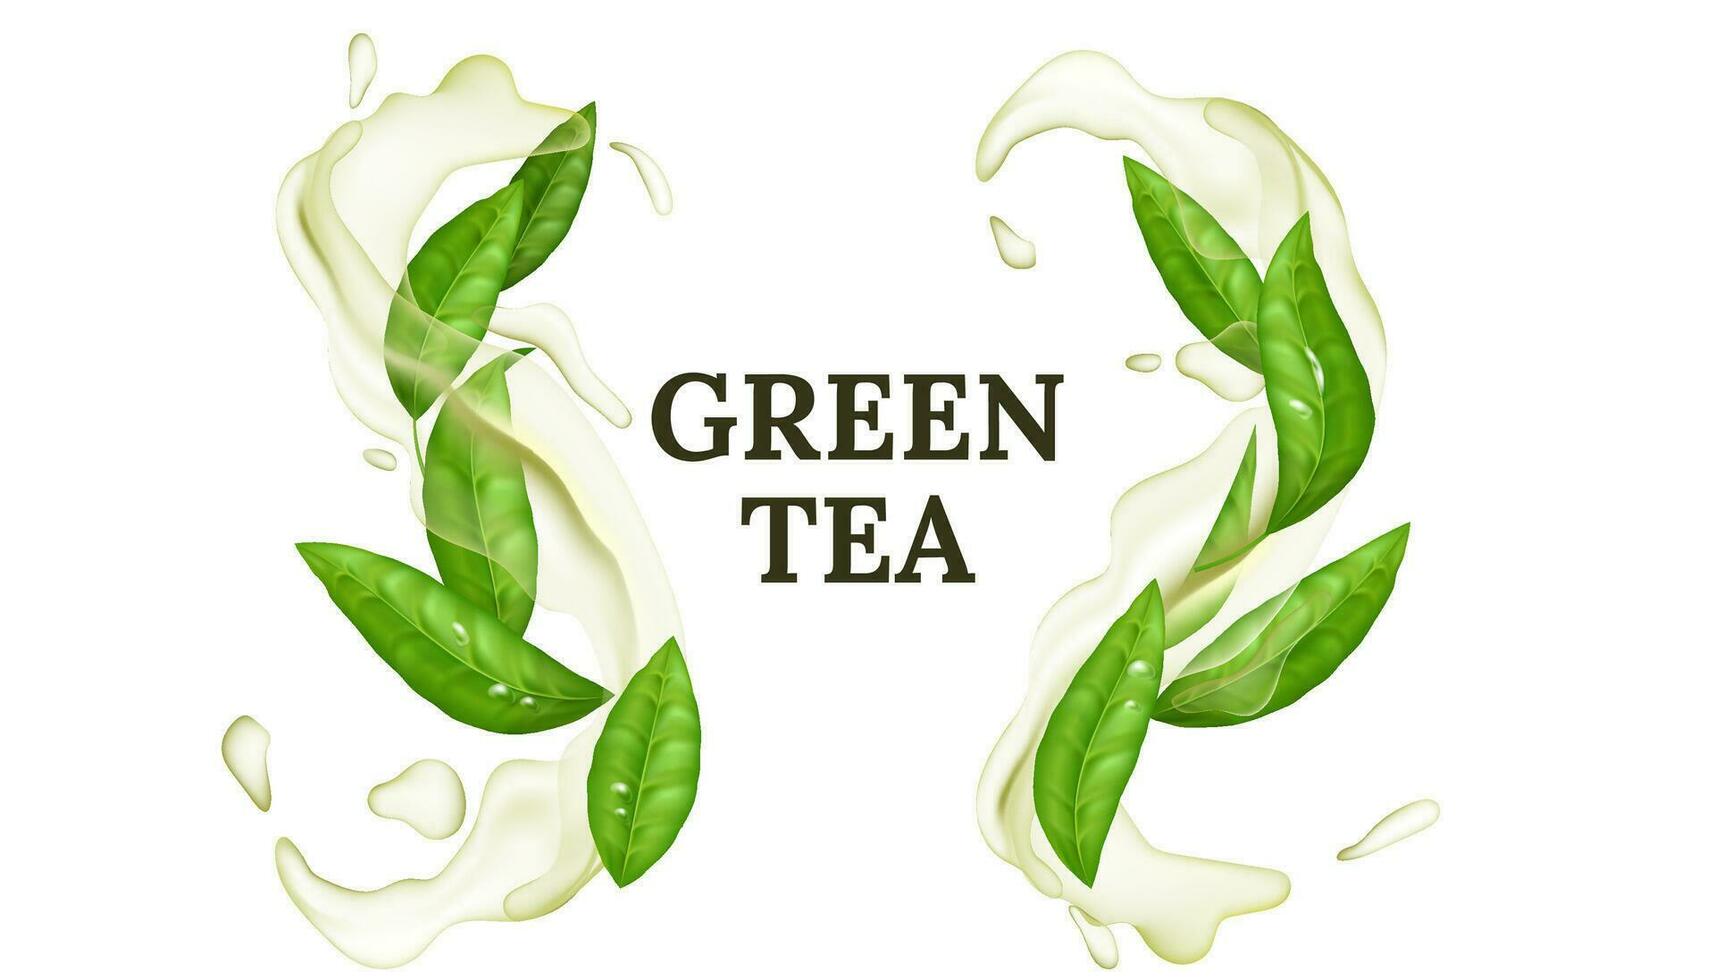 Vektor Illustration von frisch Grün Tee Blatt mit Wasser Spritzen und wirbelnd Bewegung. erfrischend und gesund organisch Getränk mit ein Menthol Aroma. abstrakt und natürlich Design